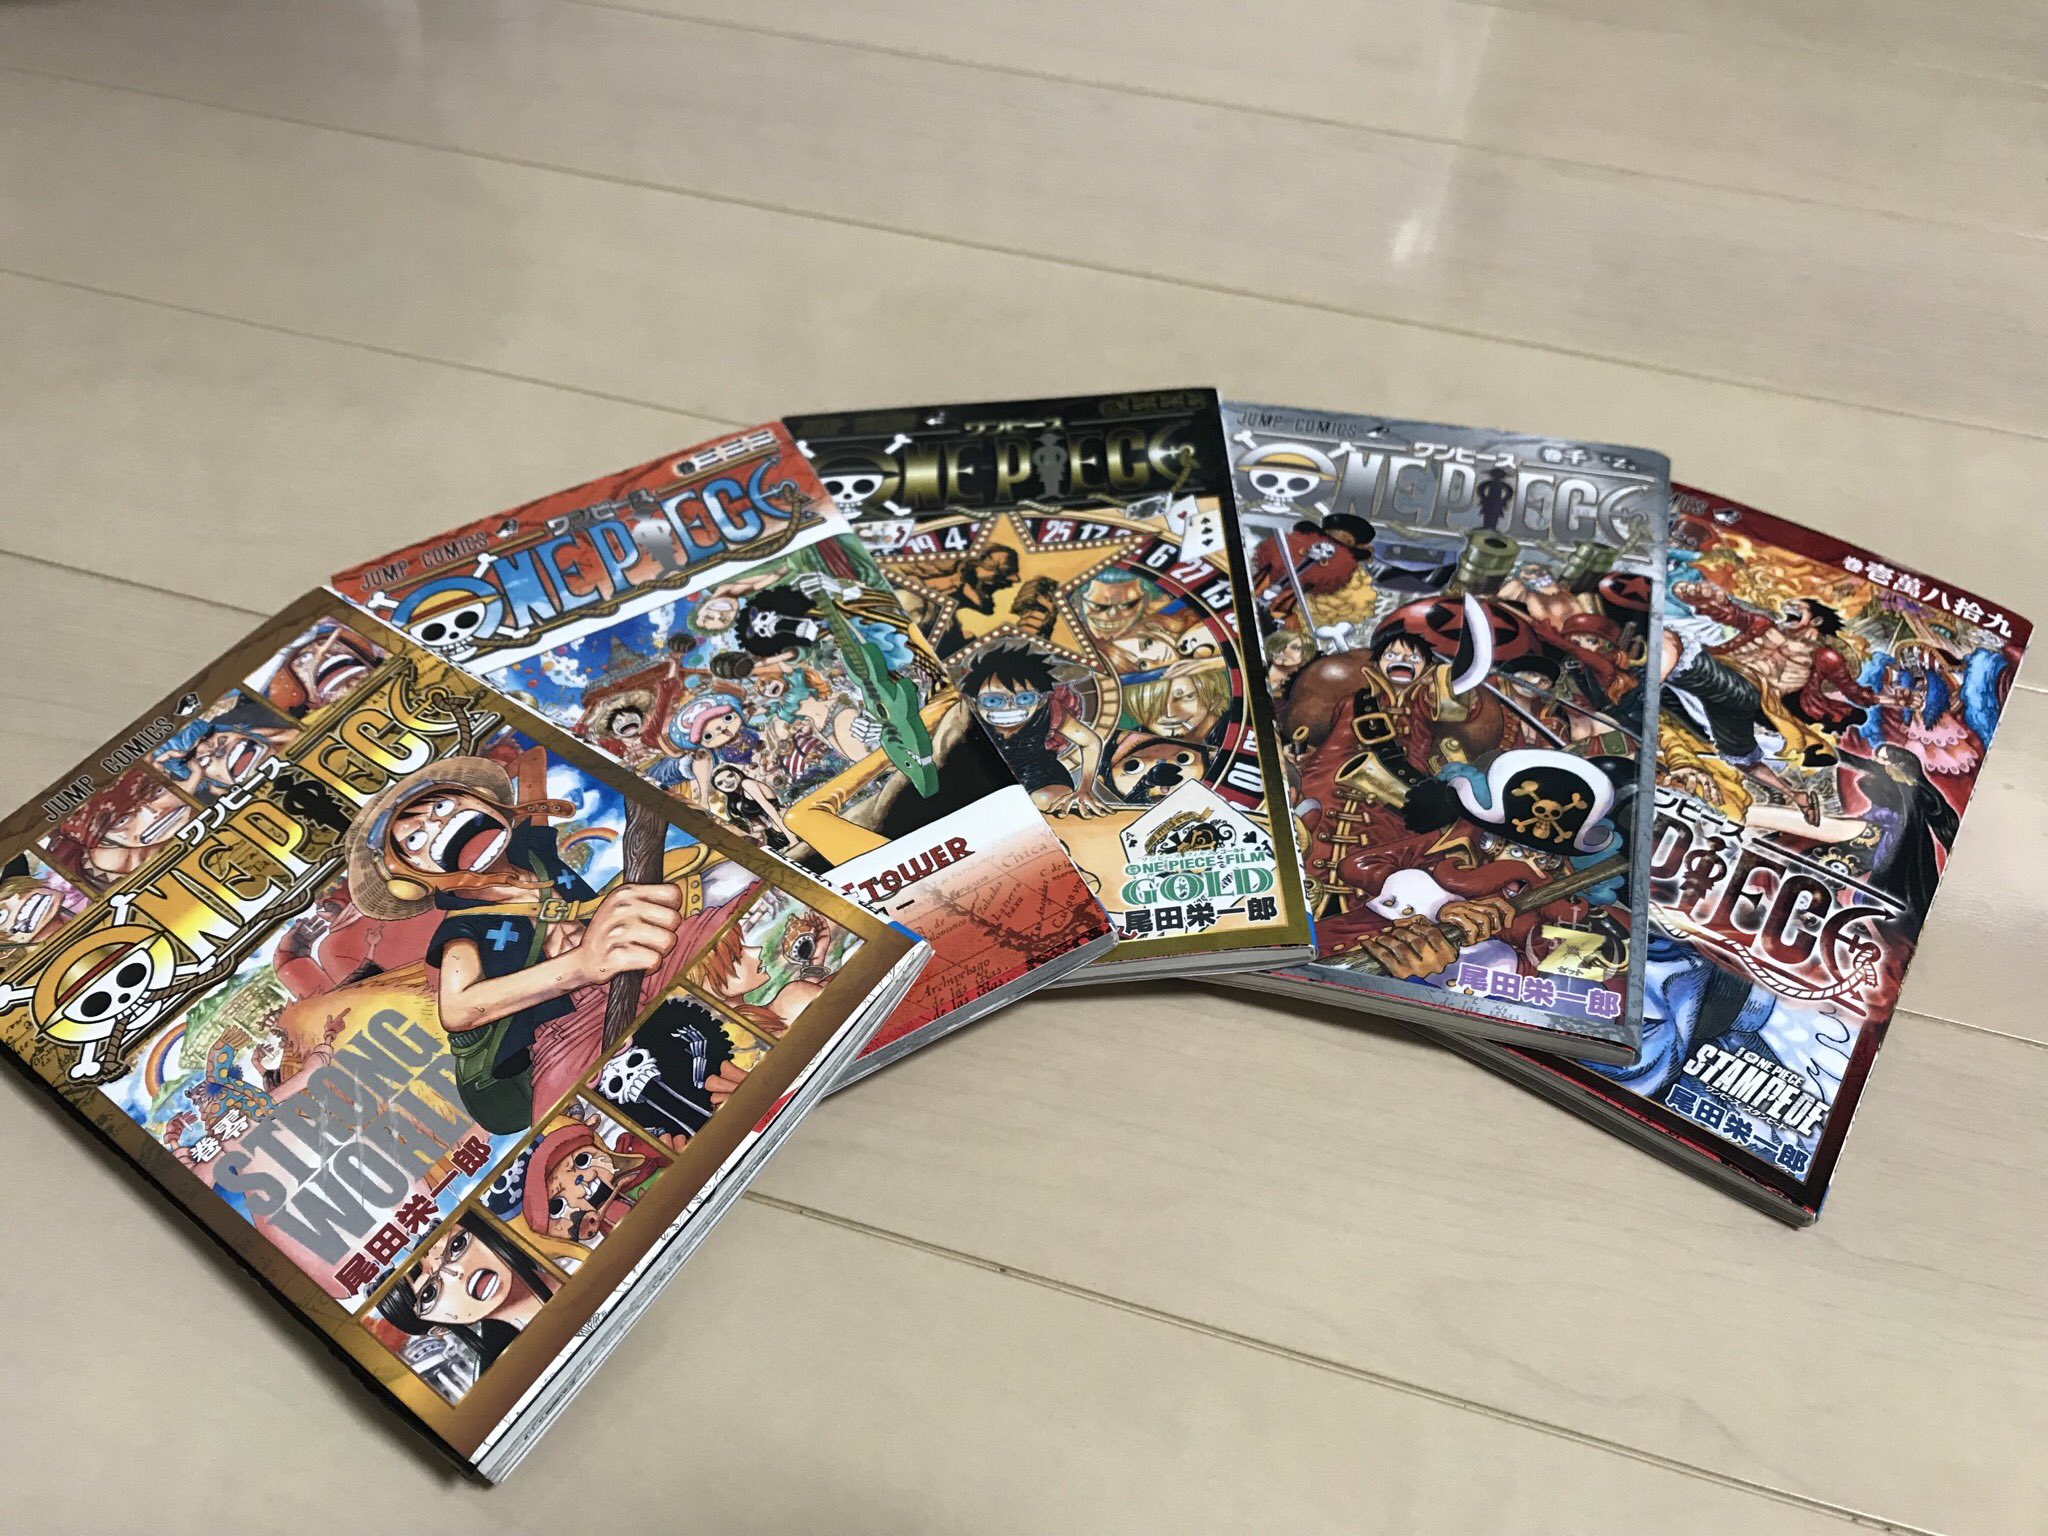 だいちゃん Pokemonlegends完 One Pieceの映画を見るたびに増えていく非売品のコミック 左から ストロングワールドの０巻 東京ワンピースタワーの333巻 ゴールドの777巻 ゼットの1000巻 そして 今回のスタンピードの100巻 ワンピース